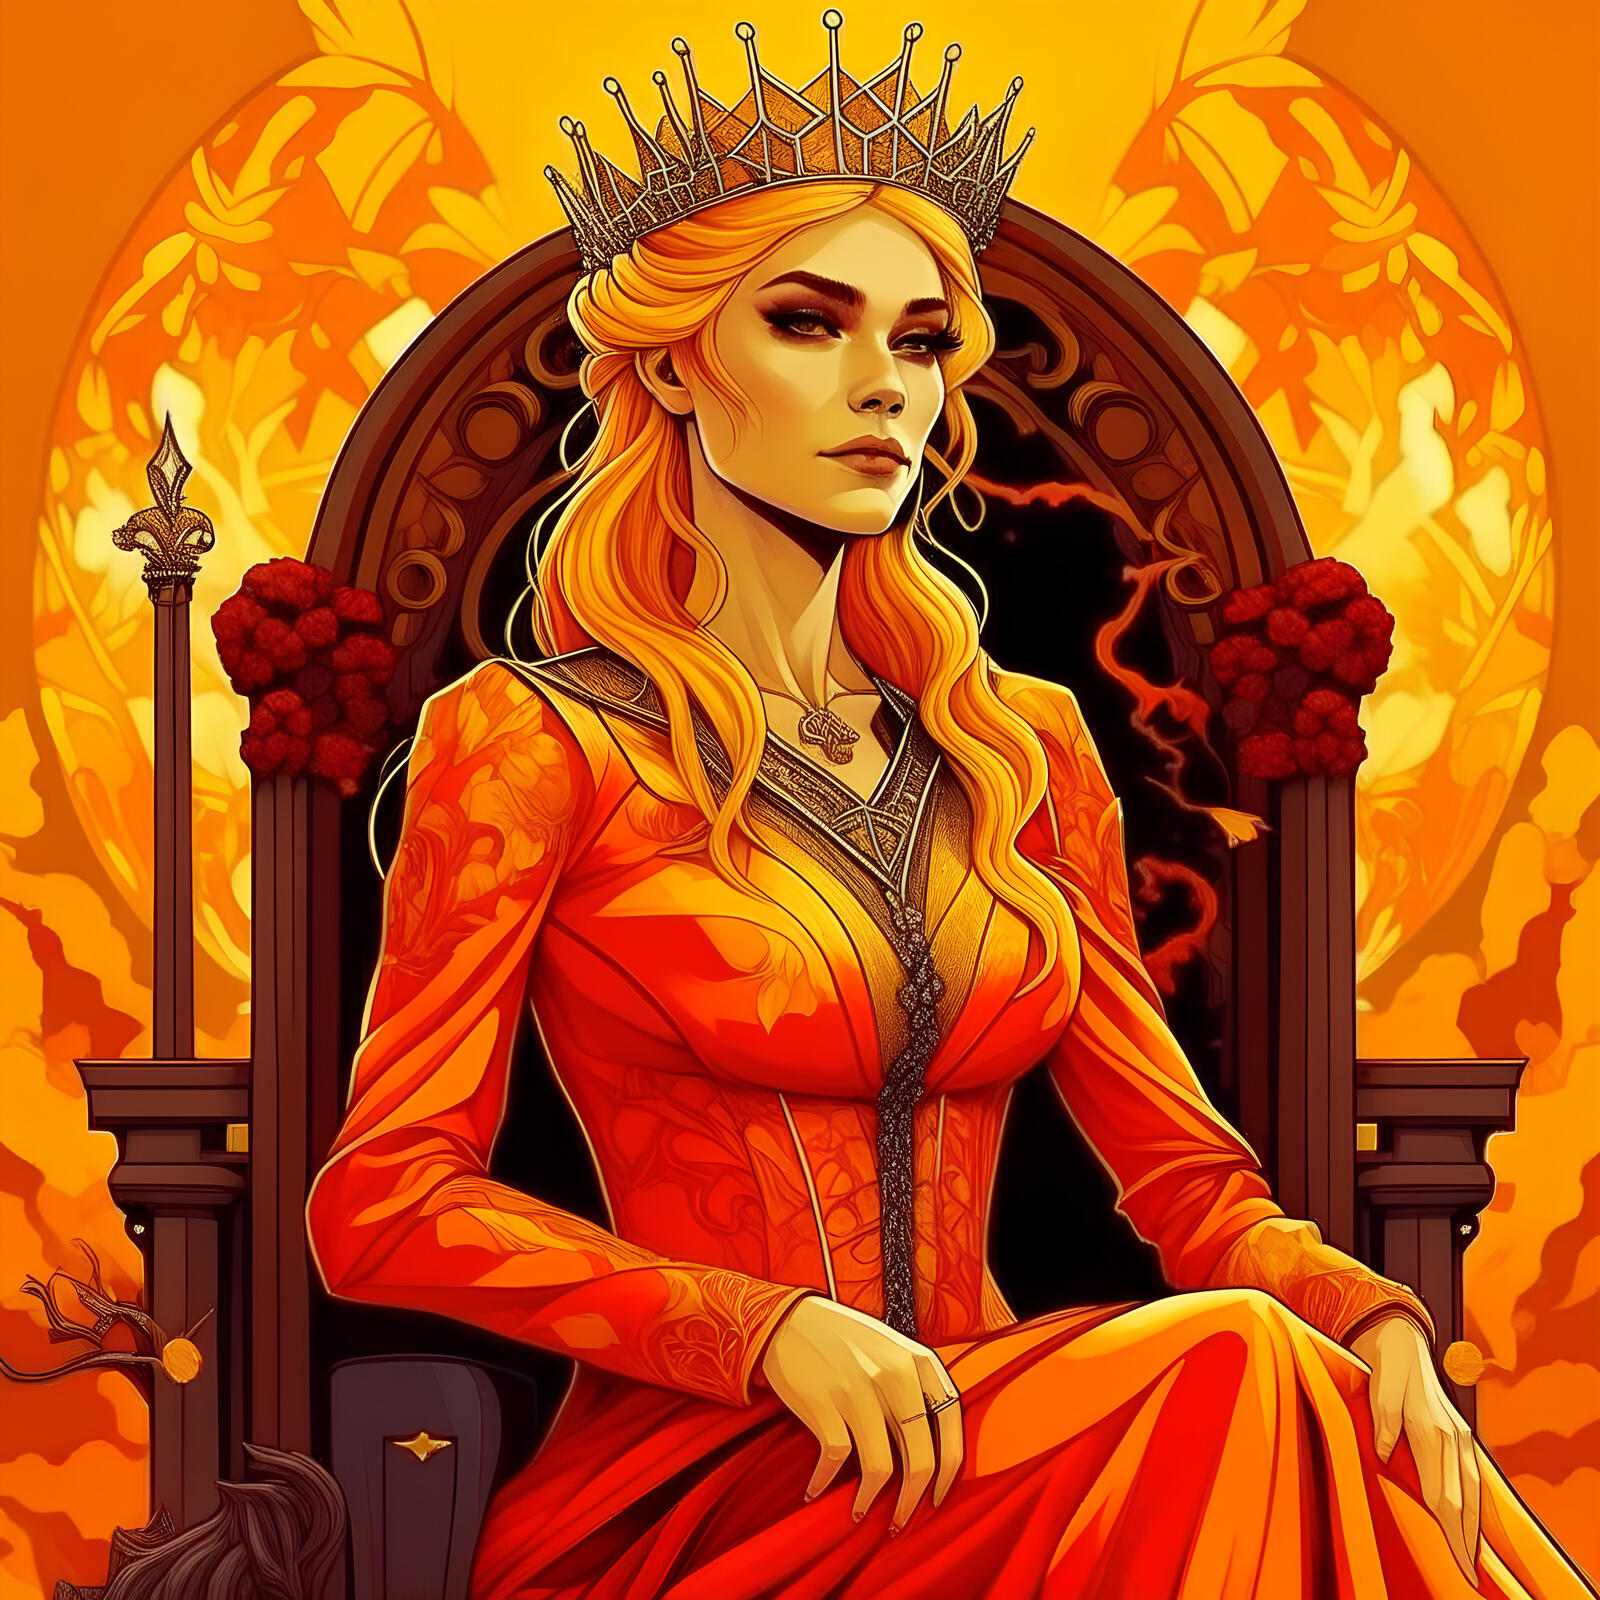 Бесплатное фото Cersei Game of Thrones